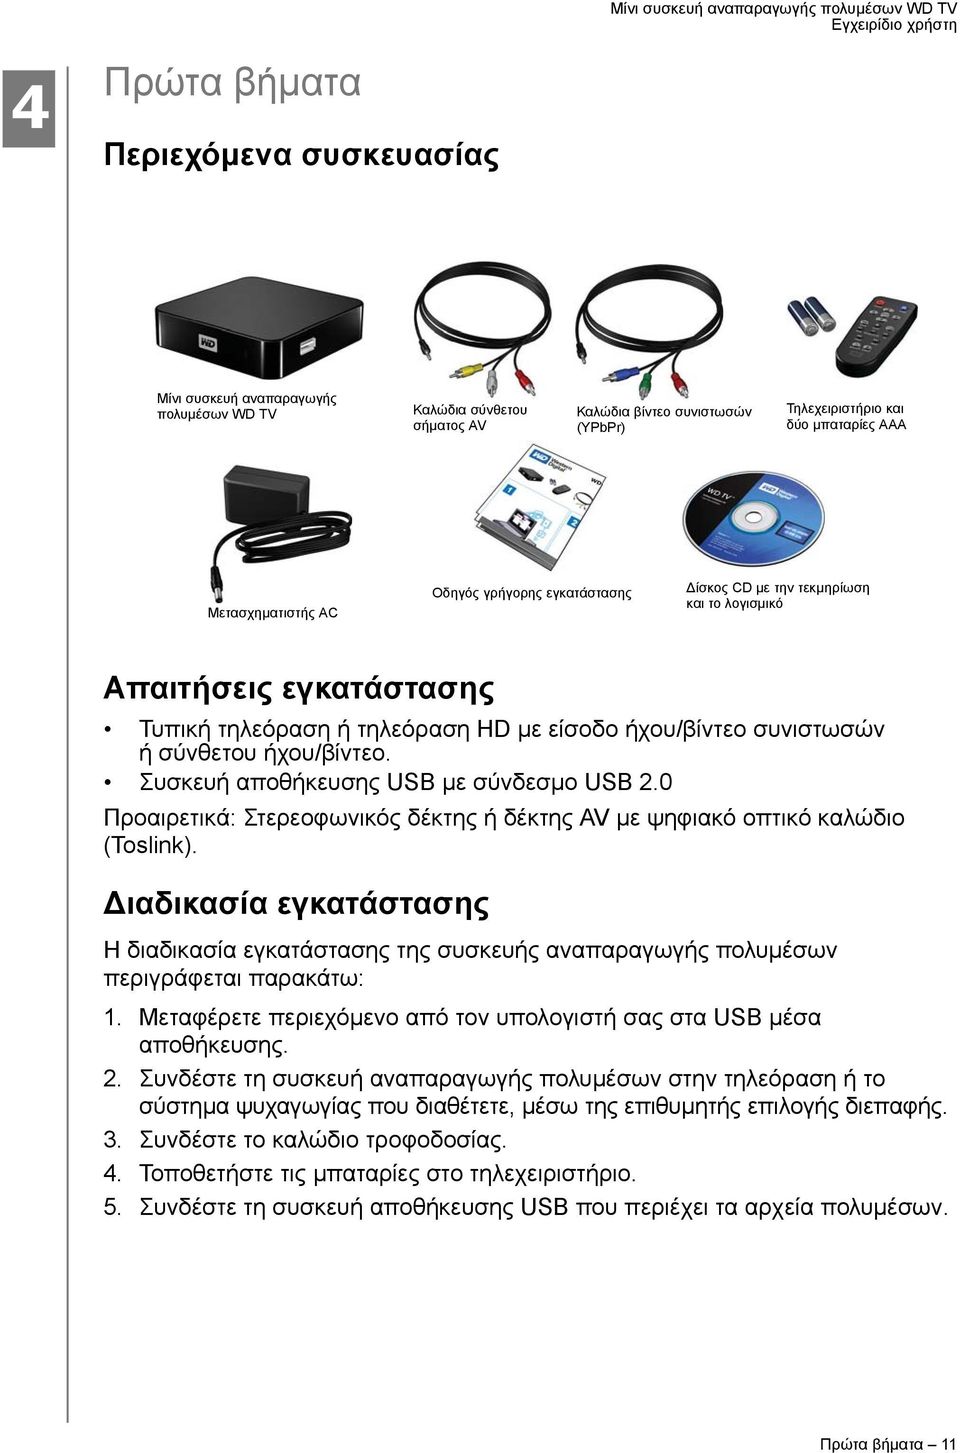 Συσκευή αποθήκευσης USB με σύνδεσμο USB 2.0 Προαιρετικά: Στερεοφωνικός δέκτης ή δέκτης AV με ψηφιακό οπτικό καλώδιο (Toslink).